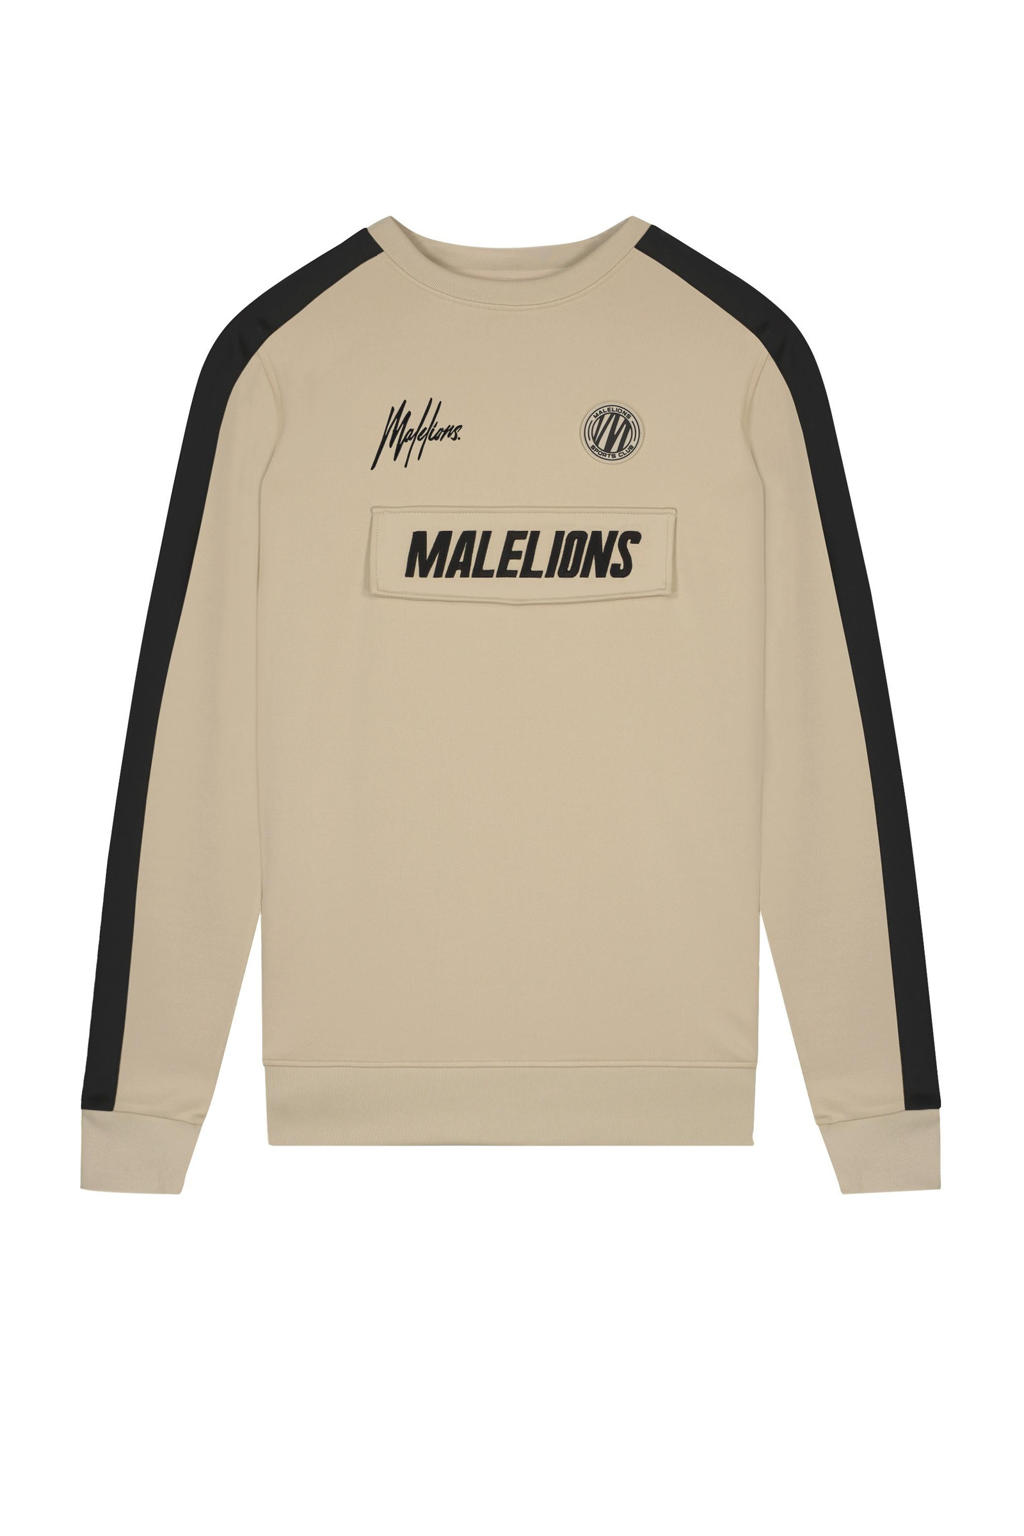 Malelions sweater beige/zwart